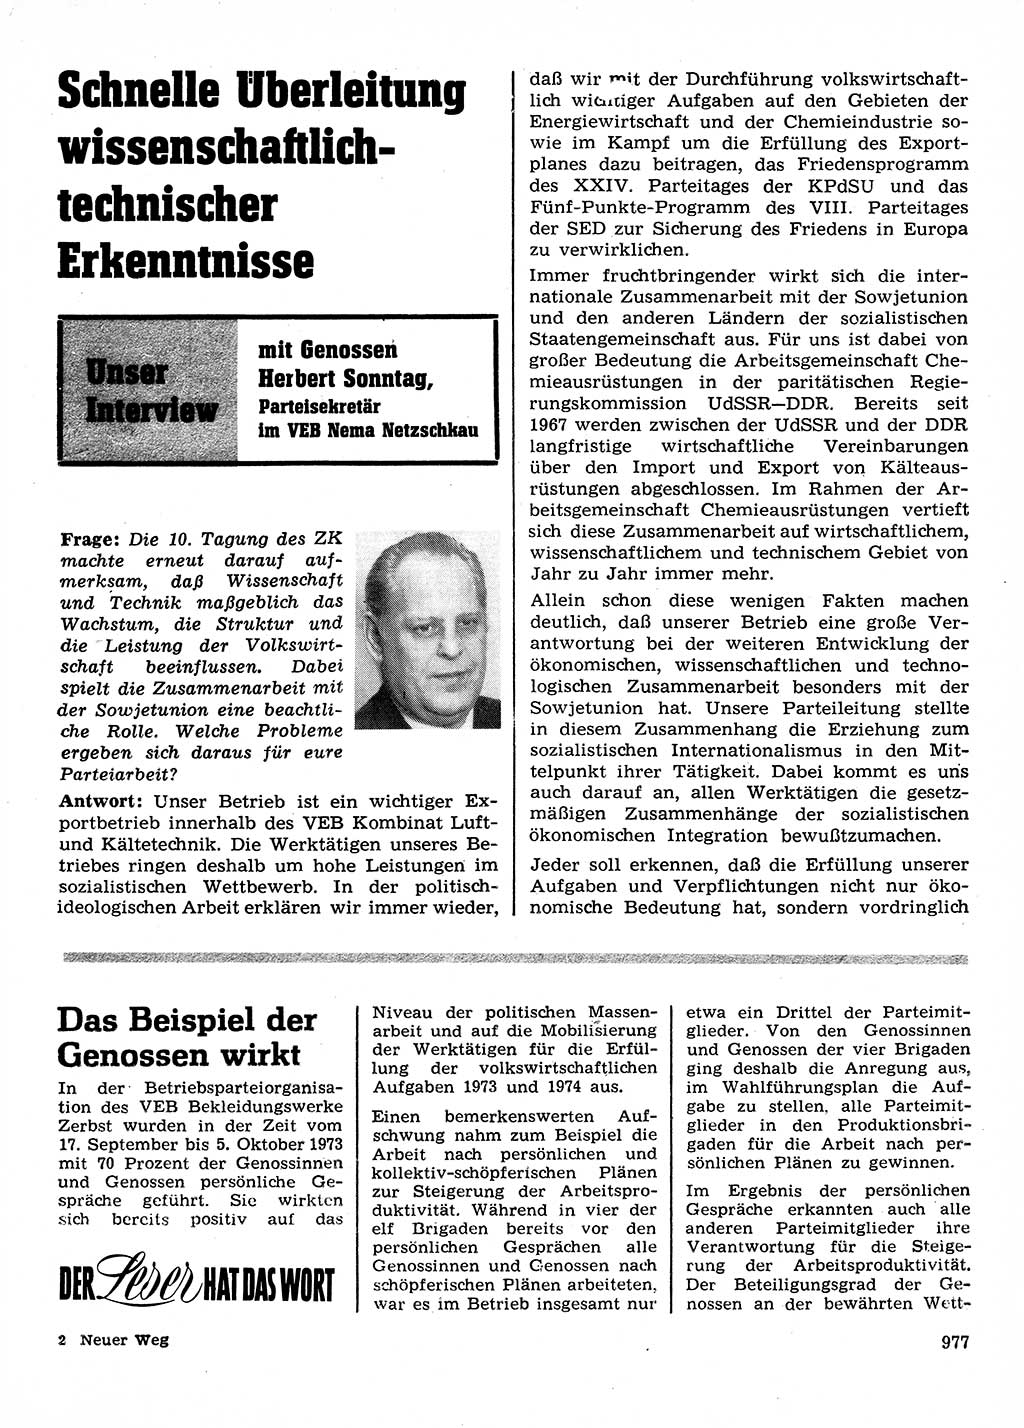 Neuer Weg (NW), Organ des Zentralkomitees (ZK) der SED (Sozialistische Einheitspartei Deutschlands) für Fragen des Parteilebens, 28. Jahrgang [Deutsche Demokratische Republik (DDR)] 1973, Seite 977 (NW ZK SED DDR 1973, S. 977)